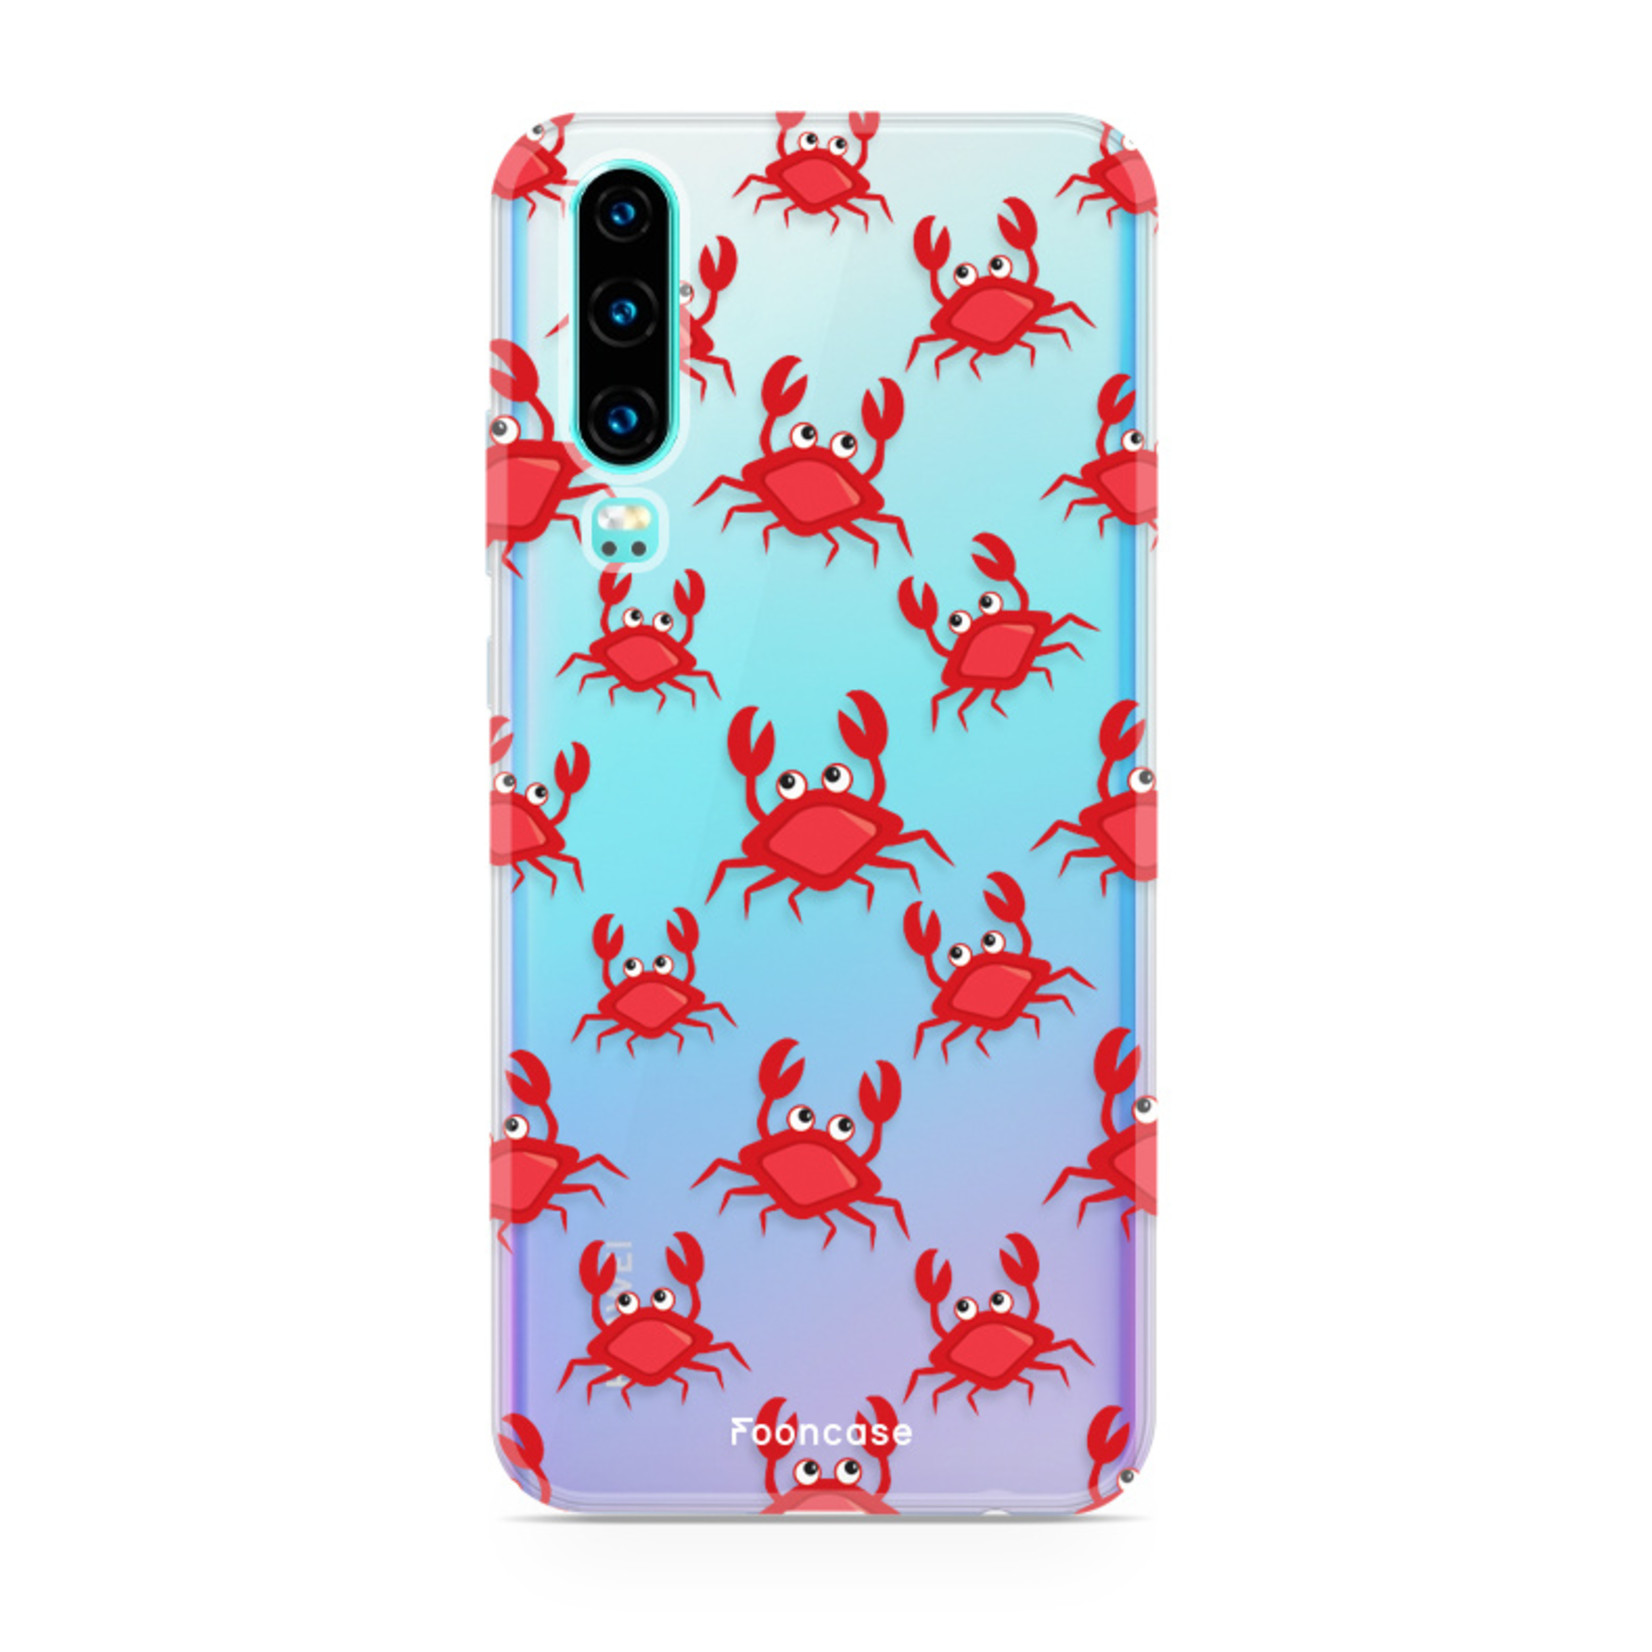 FOONCASE Huawei P30 hoesje TPU Soft Case - Back Cover - Crabs / Krabbetjes / Krabben